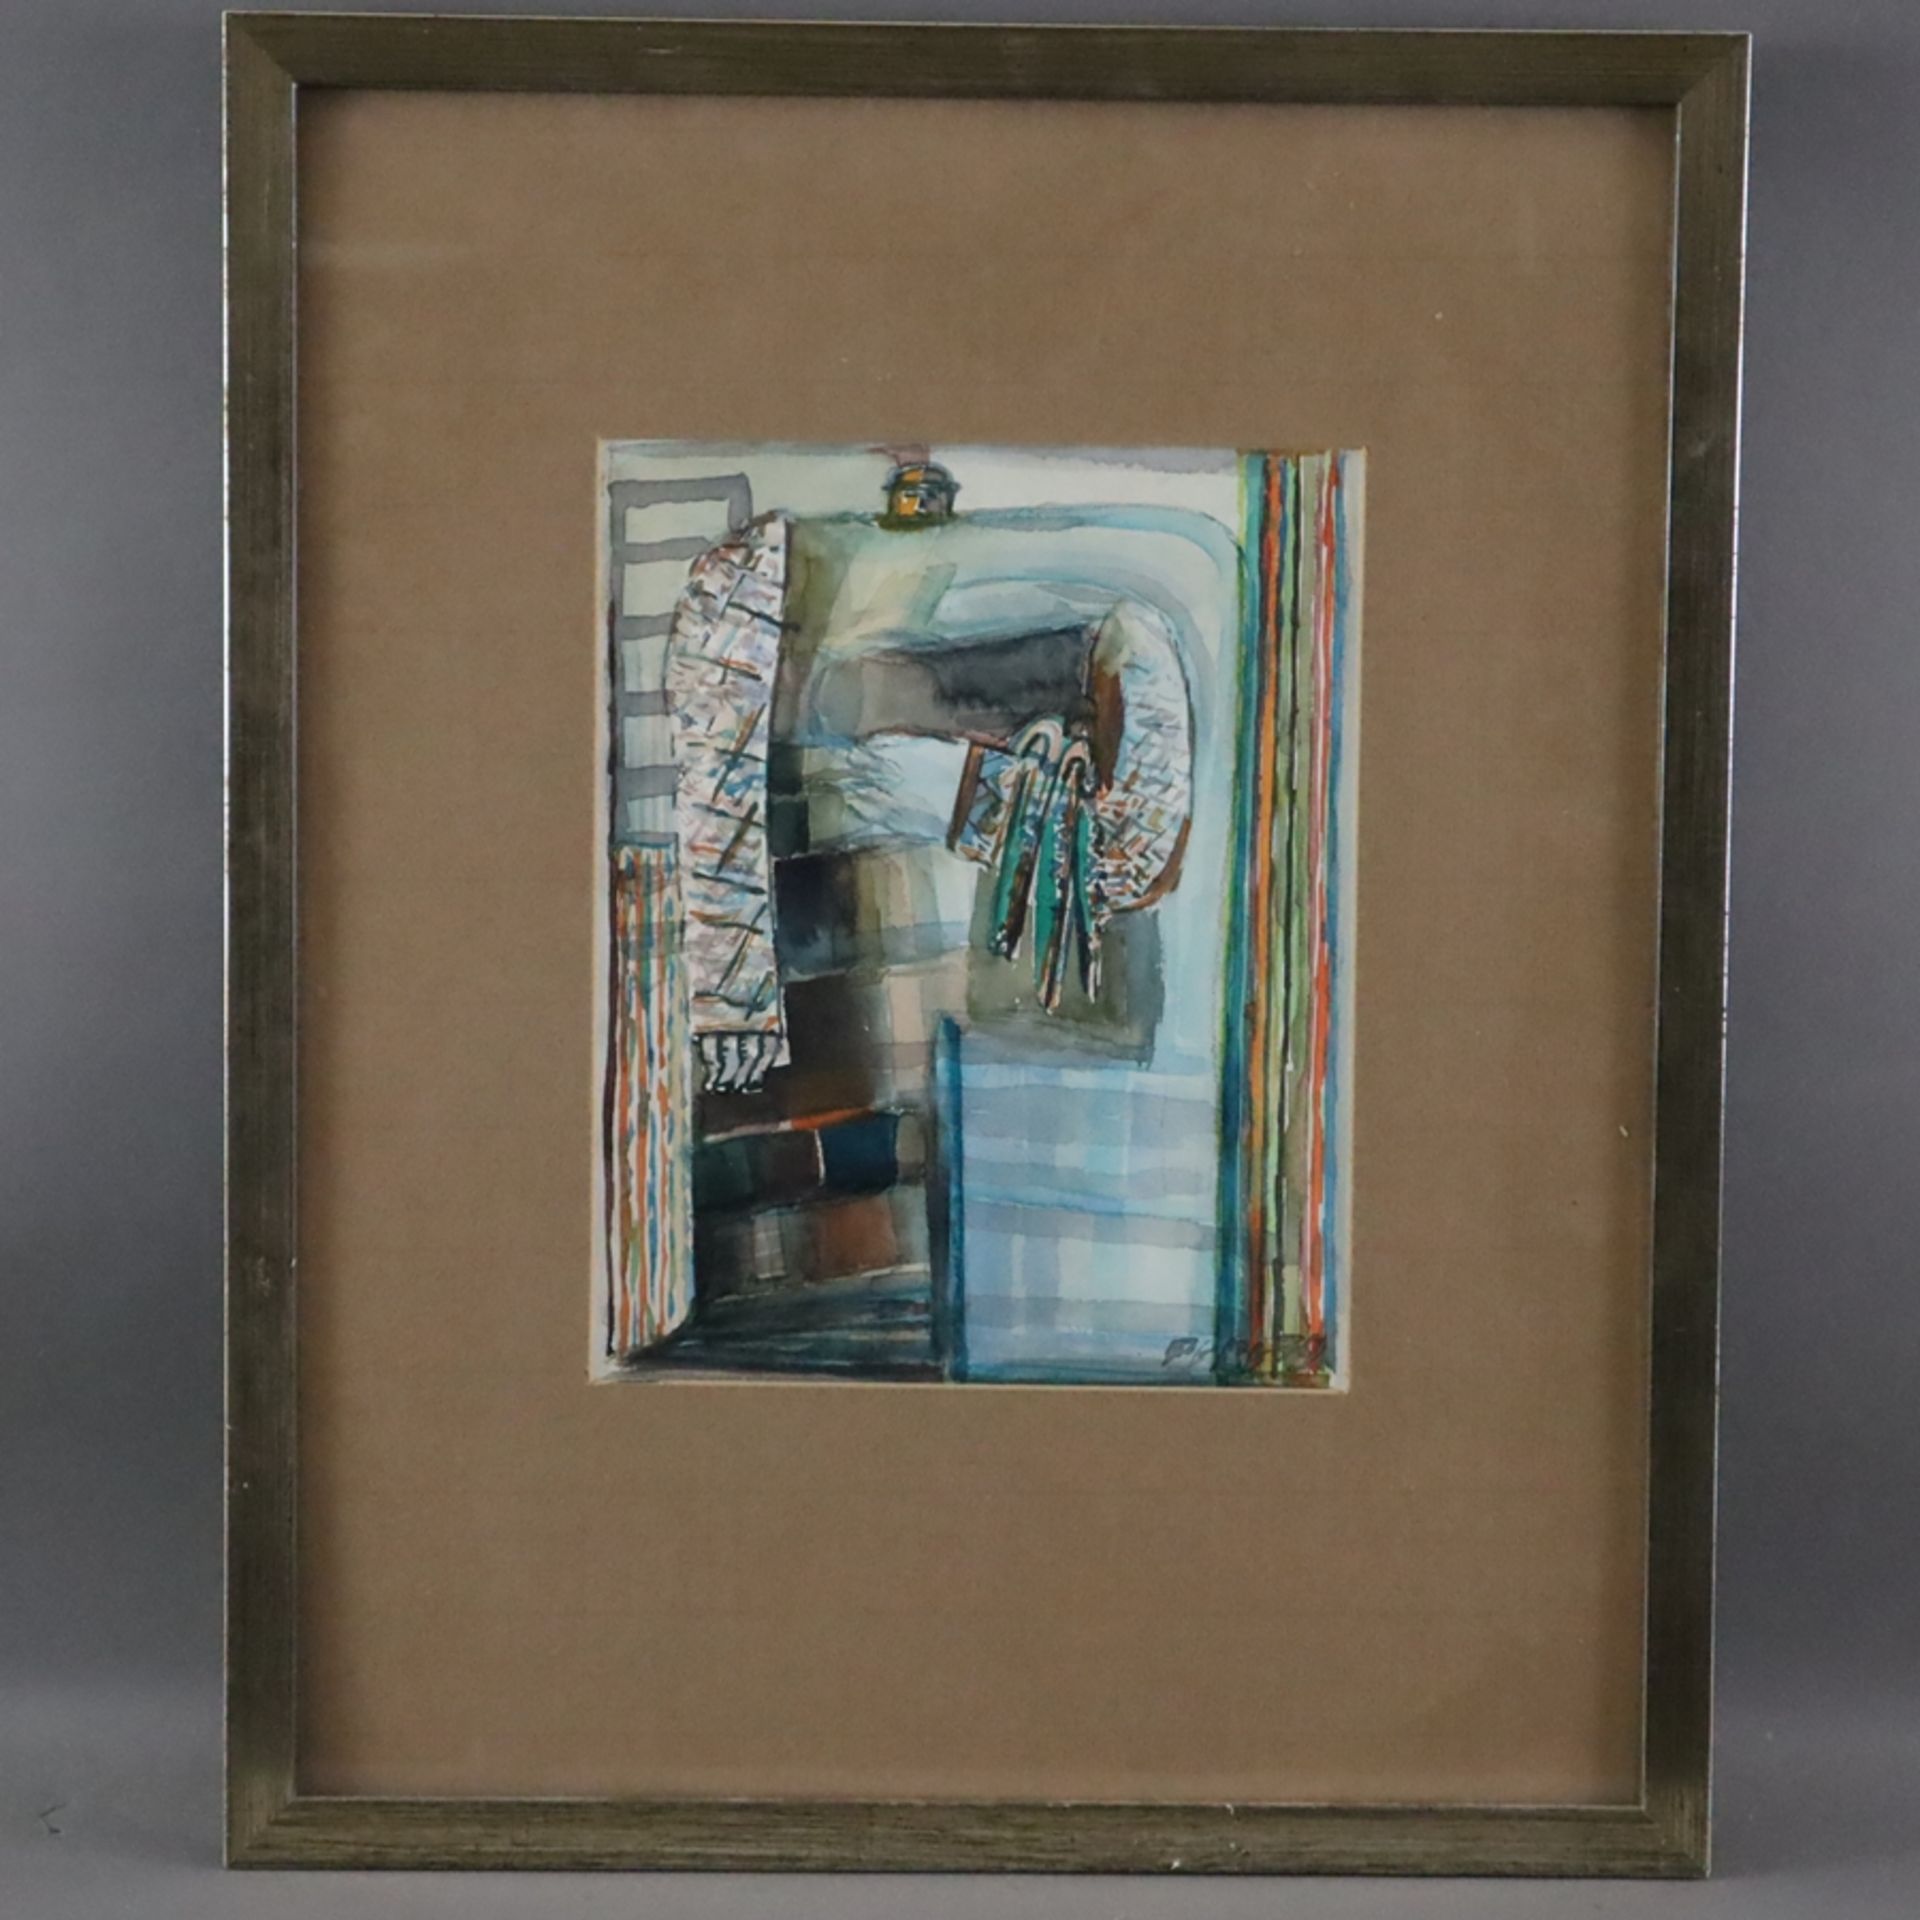 PEBE (Paul Bader, 1928-2019) - Abstrakte Figur, 1979, Aquarell auf Papier, signiert und datiert "PE - Bild 2 aus 7